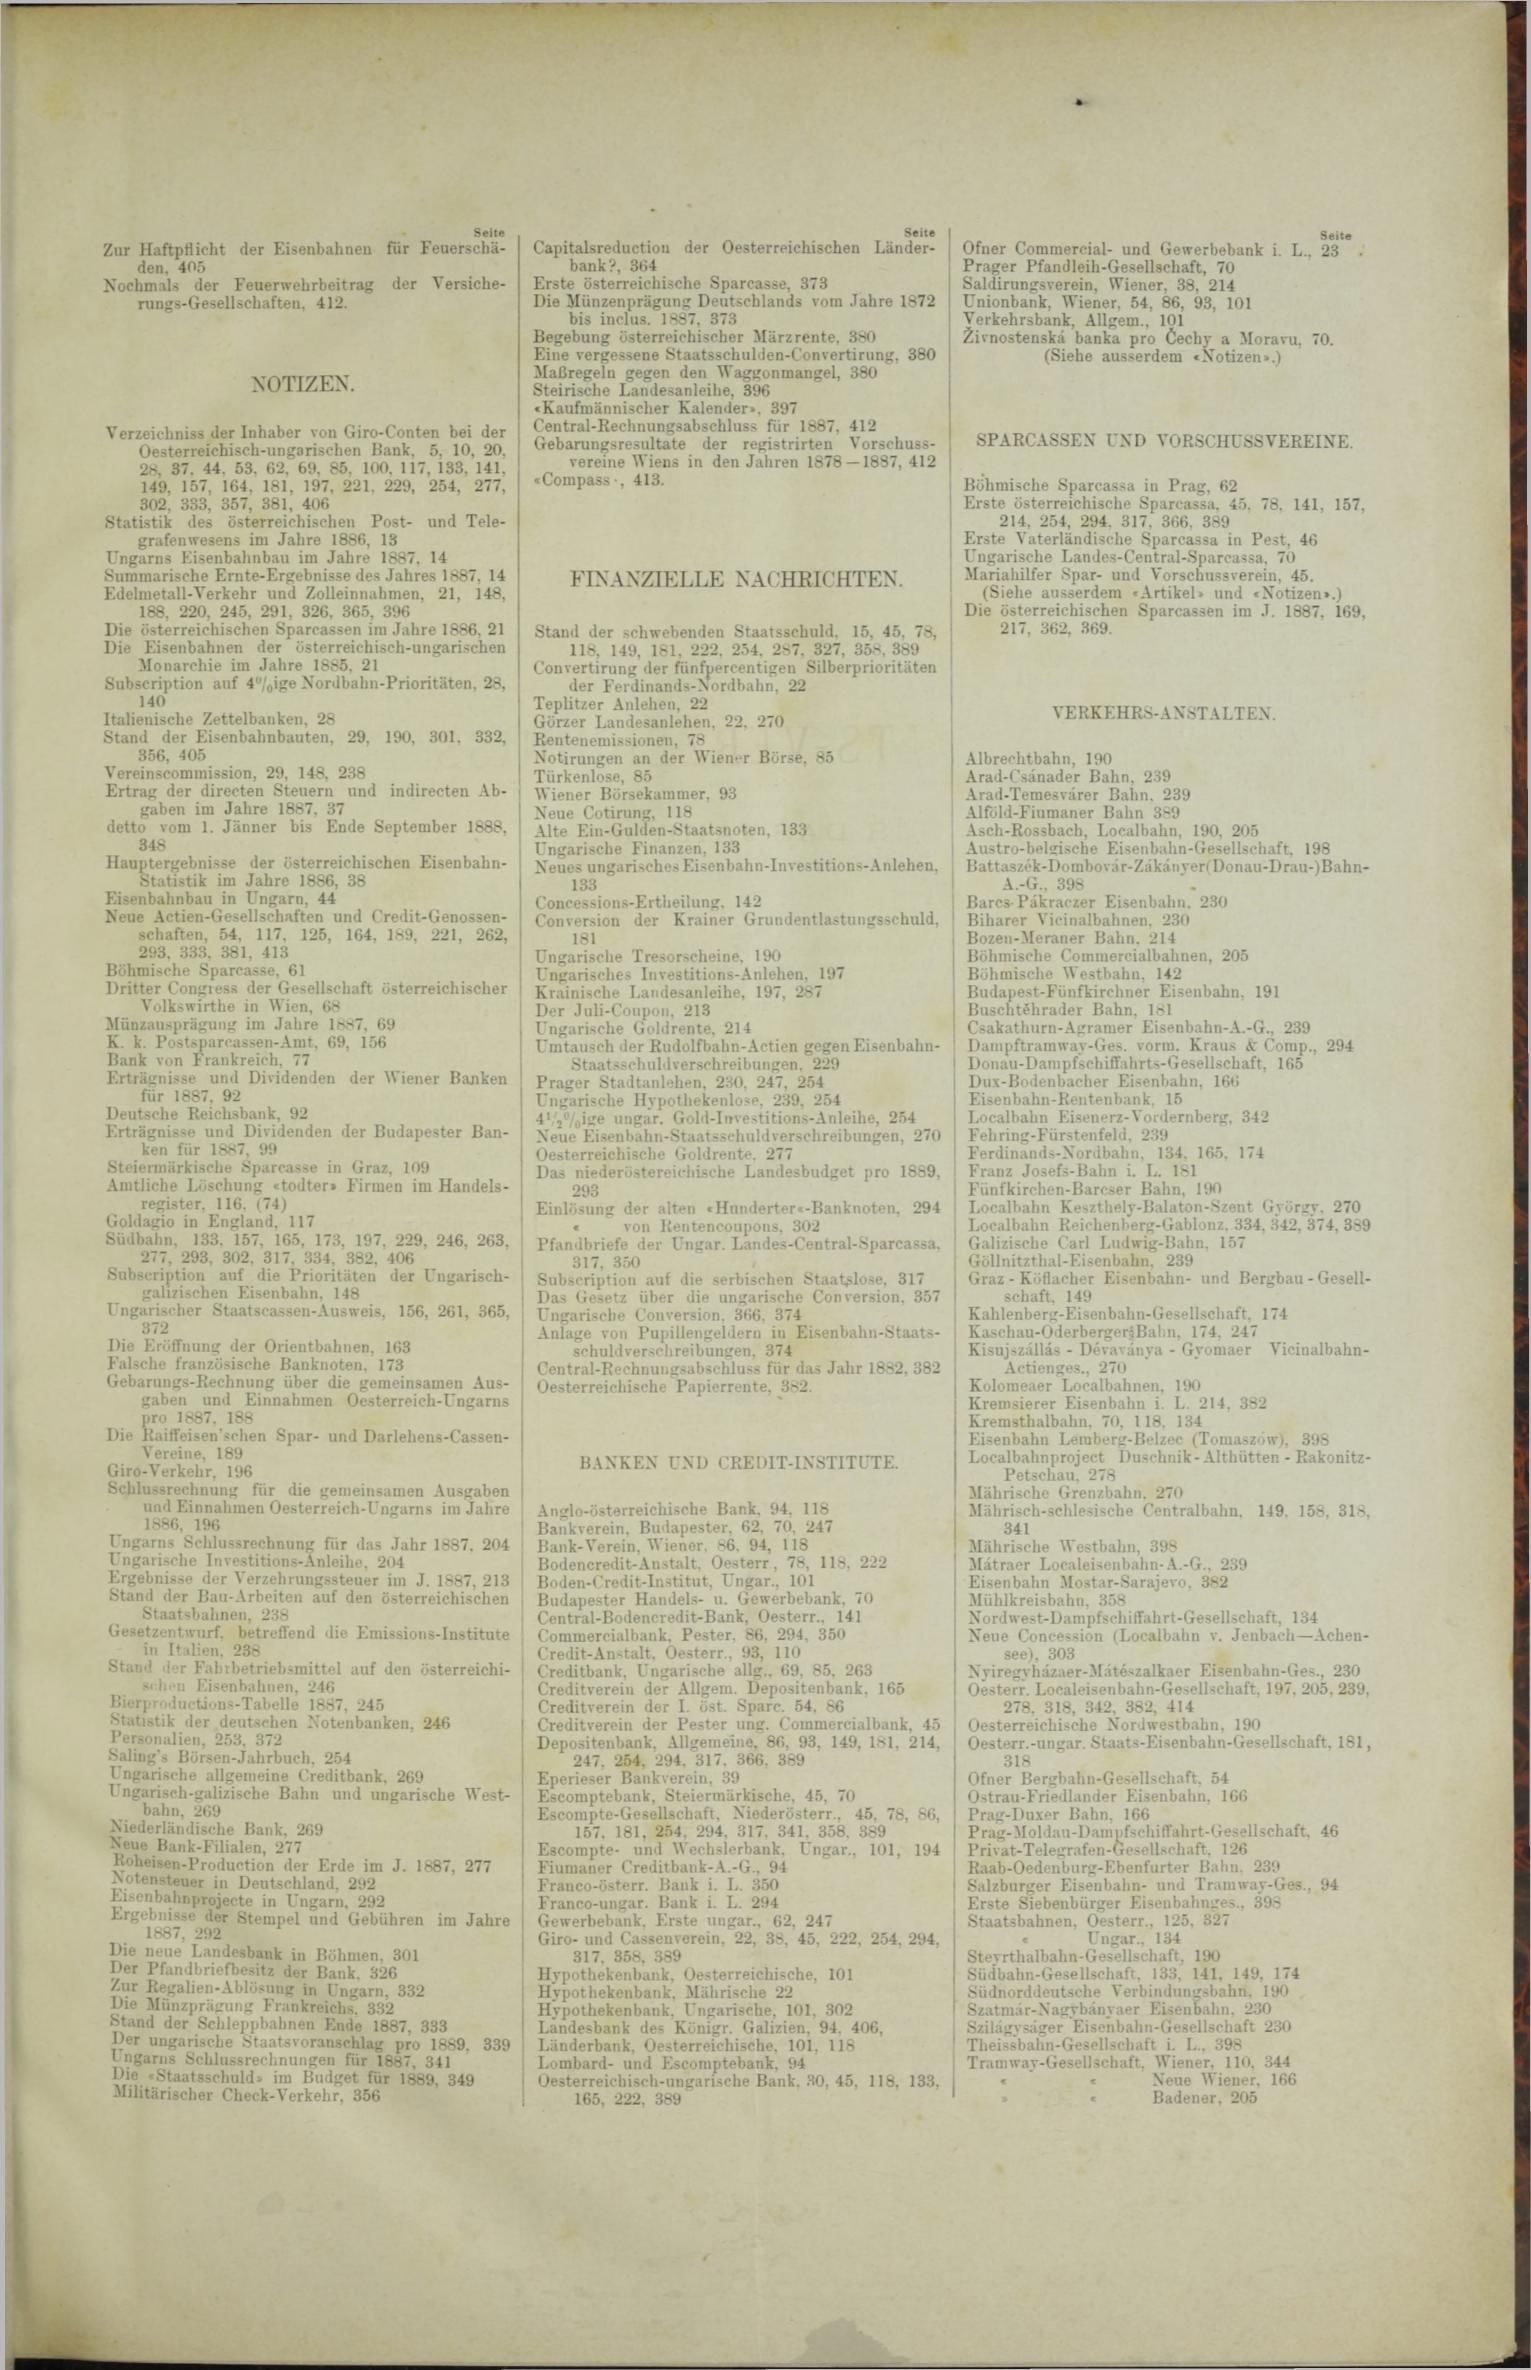 Der Tresor 19.04.1888 - Seite 11